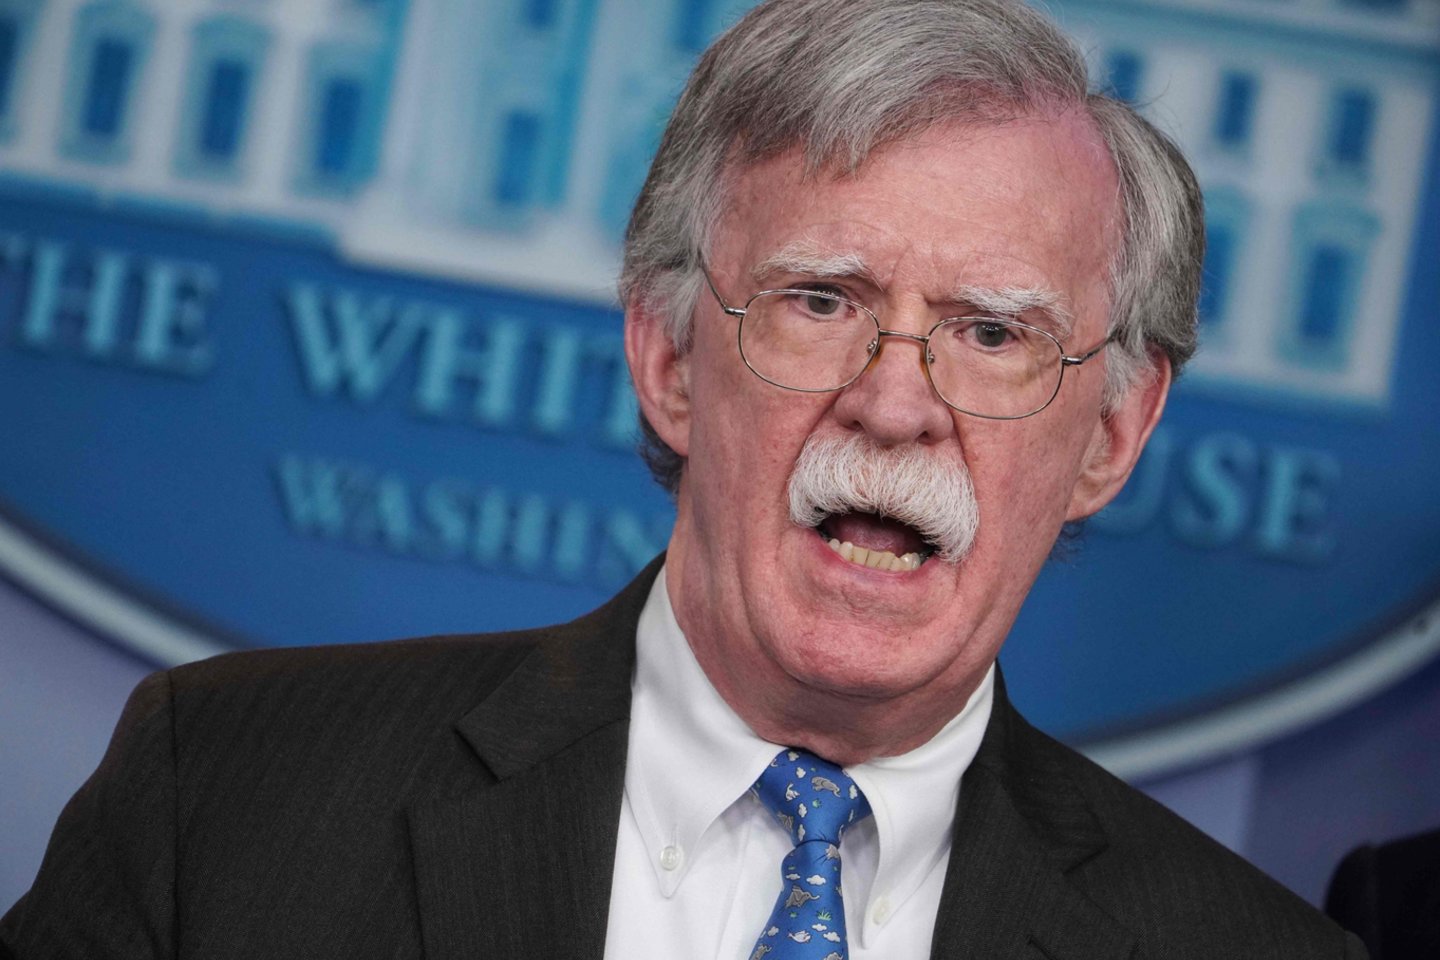  J.Boltonas sakė, kad Vašingtonas palaikytų „Irano žmonių valią ir juos paremtų, kad jų balsas būtų išgirstas“.<br> AFP/Scanpix nuotr.